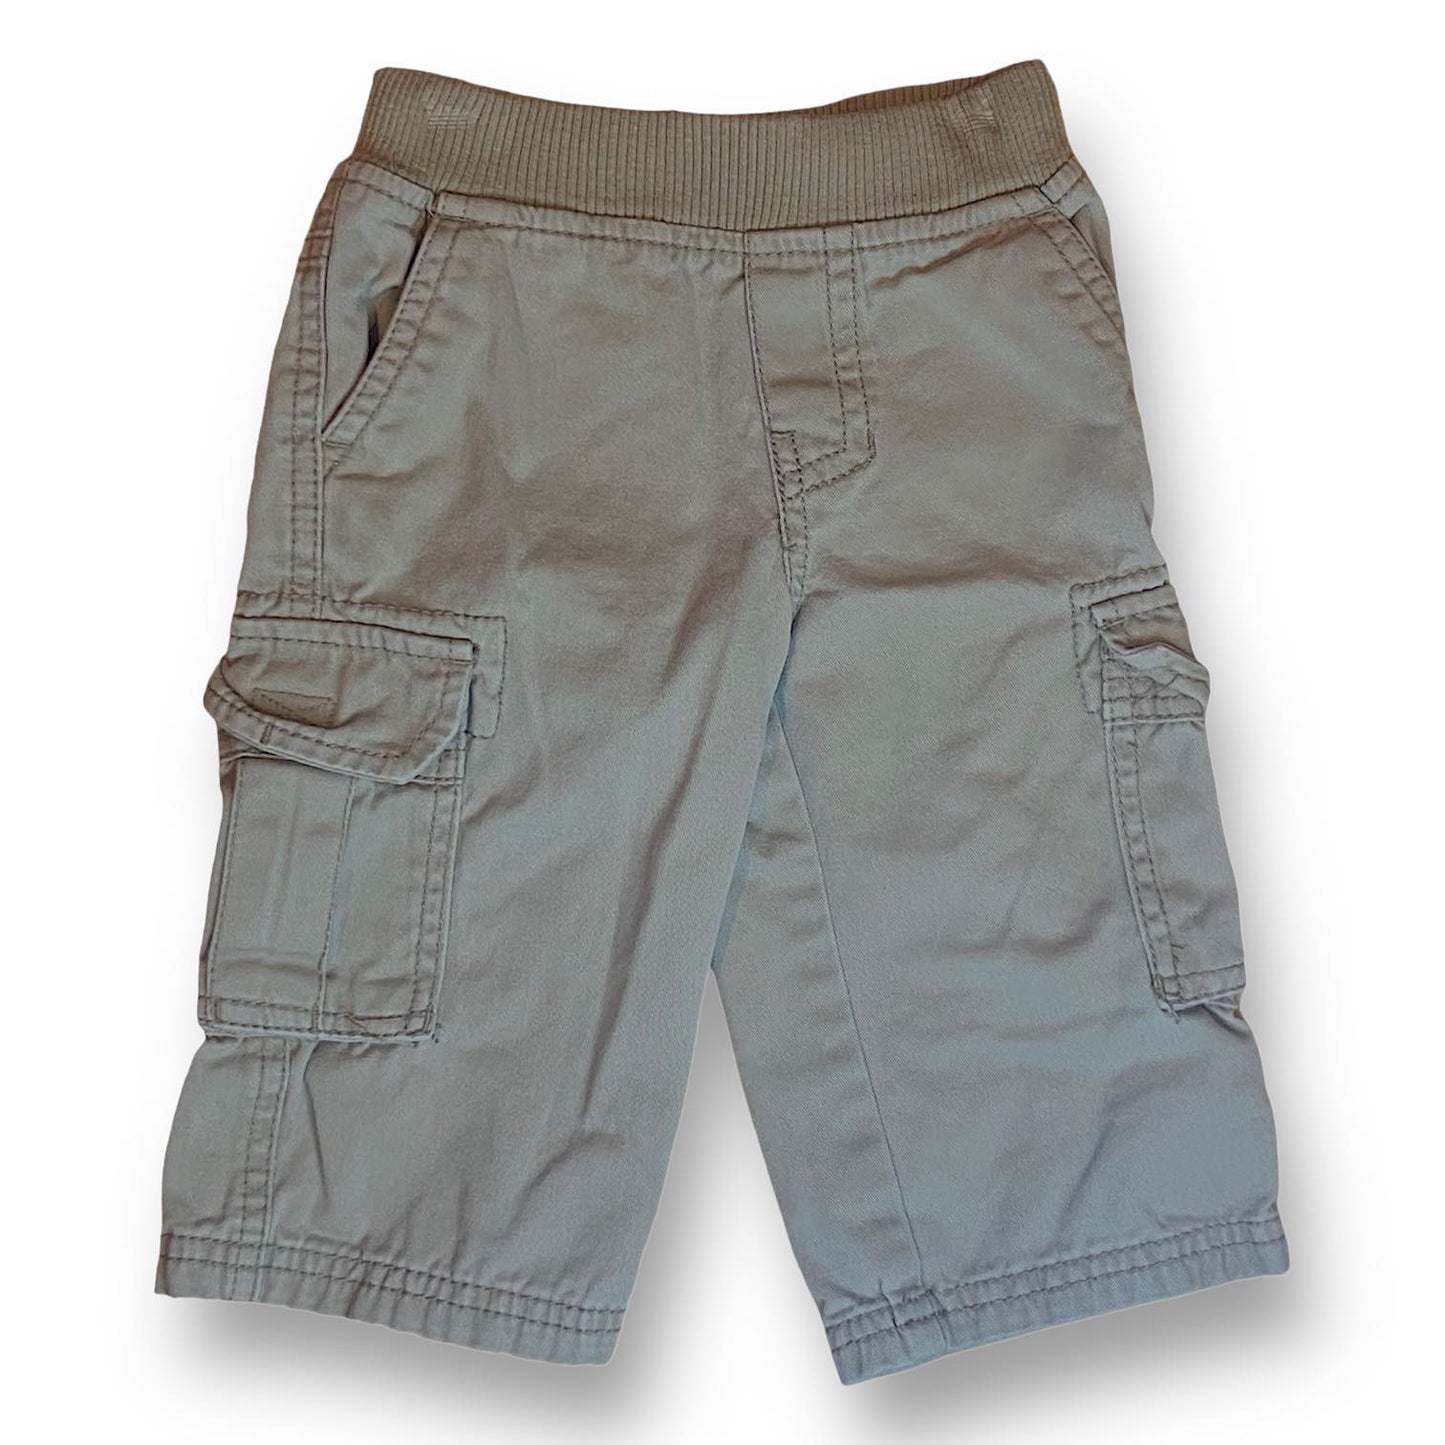 Boys Children's Place Size 9-12 Months Khaki Pants